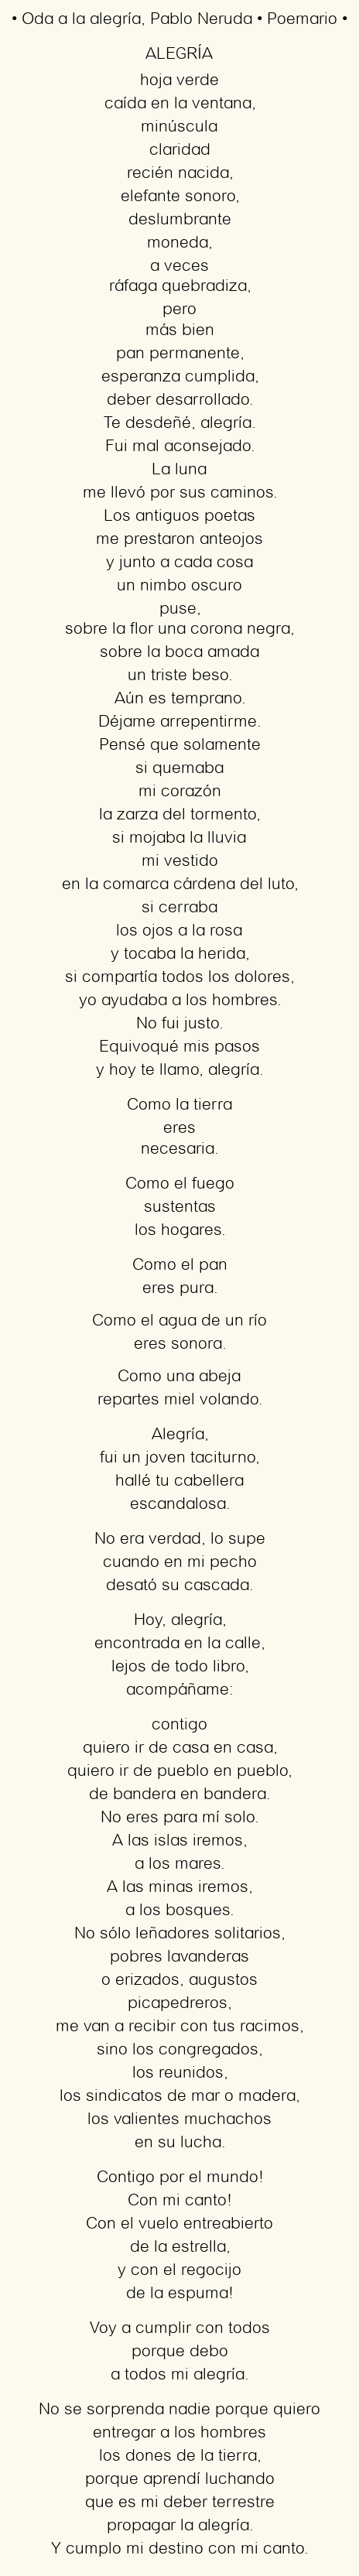 Imagen con el poema Oda a la alegría, por Pablo Neruda